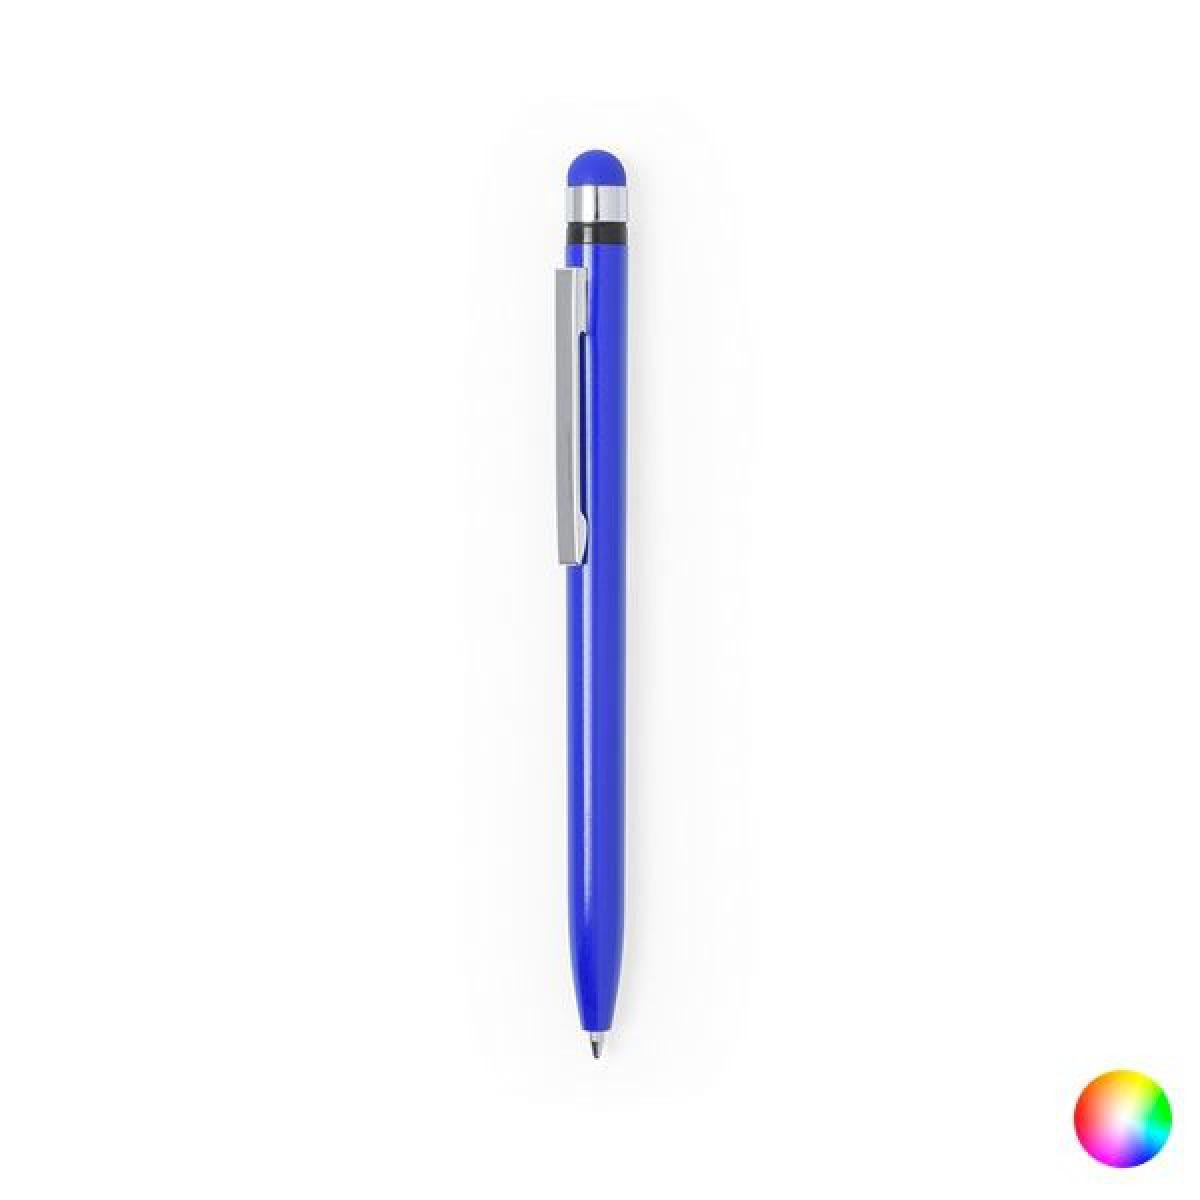 Totalcadeau - Stylo bleu avec pointe en caoutchouc stylet tactile - Stylo encre bleu design Couleur - Jaune pas cher - Accessoires Bureau